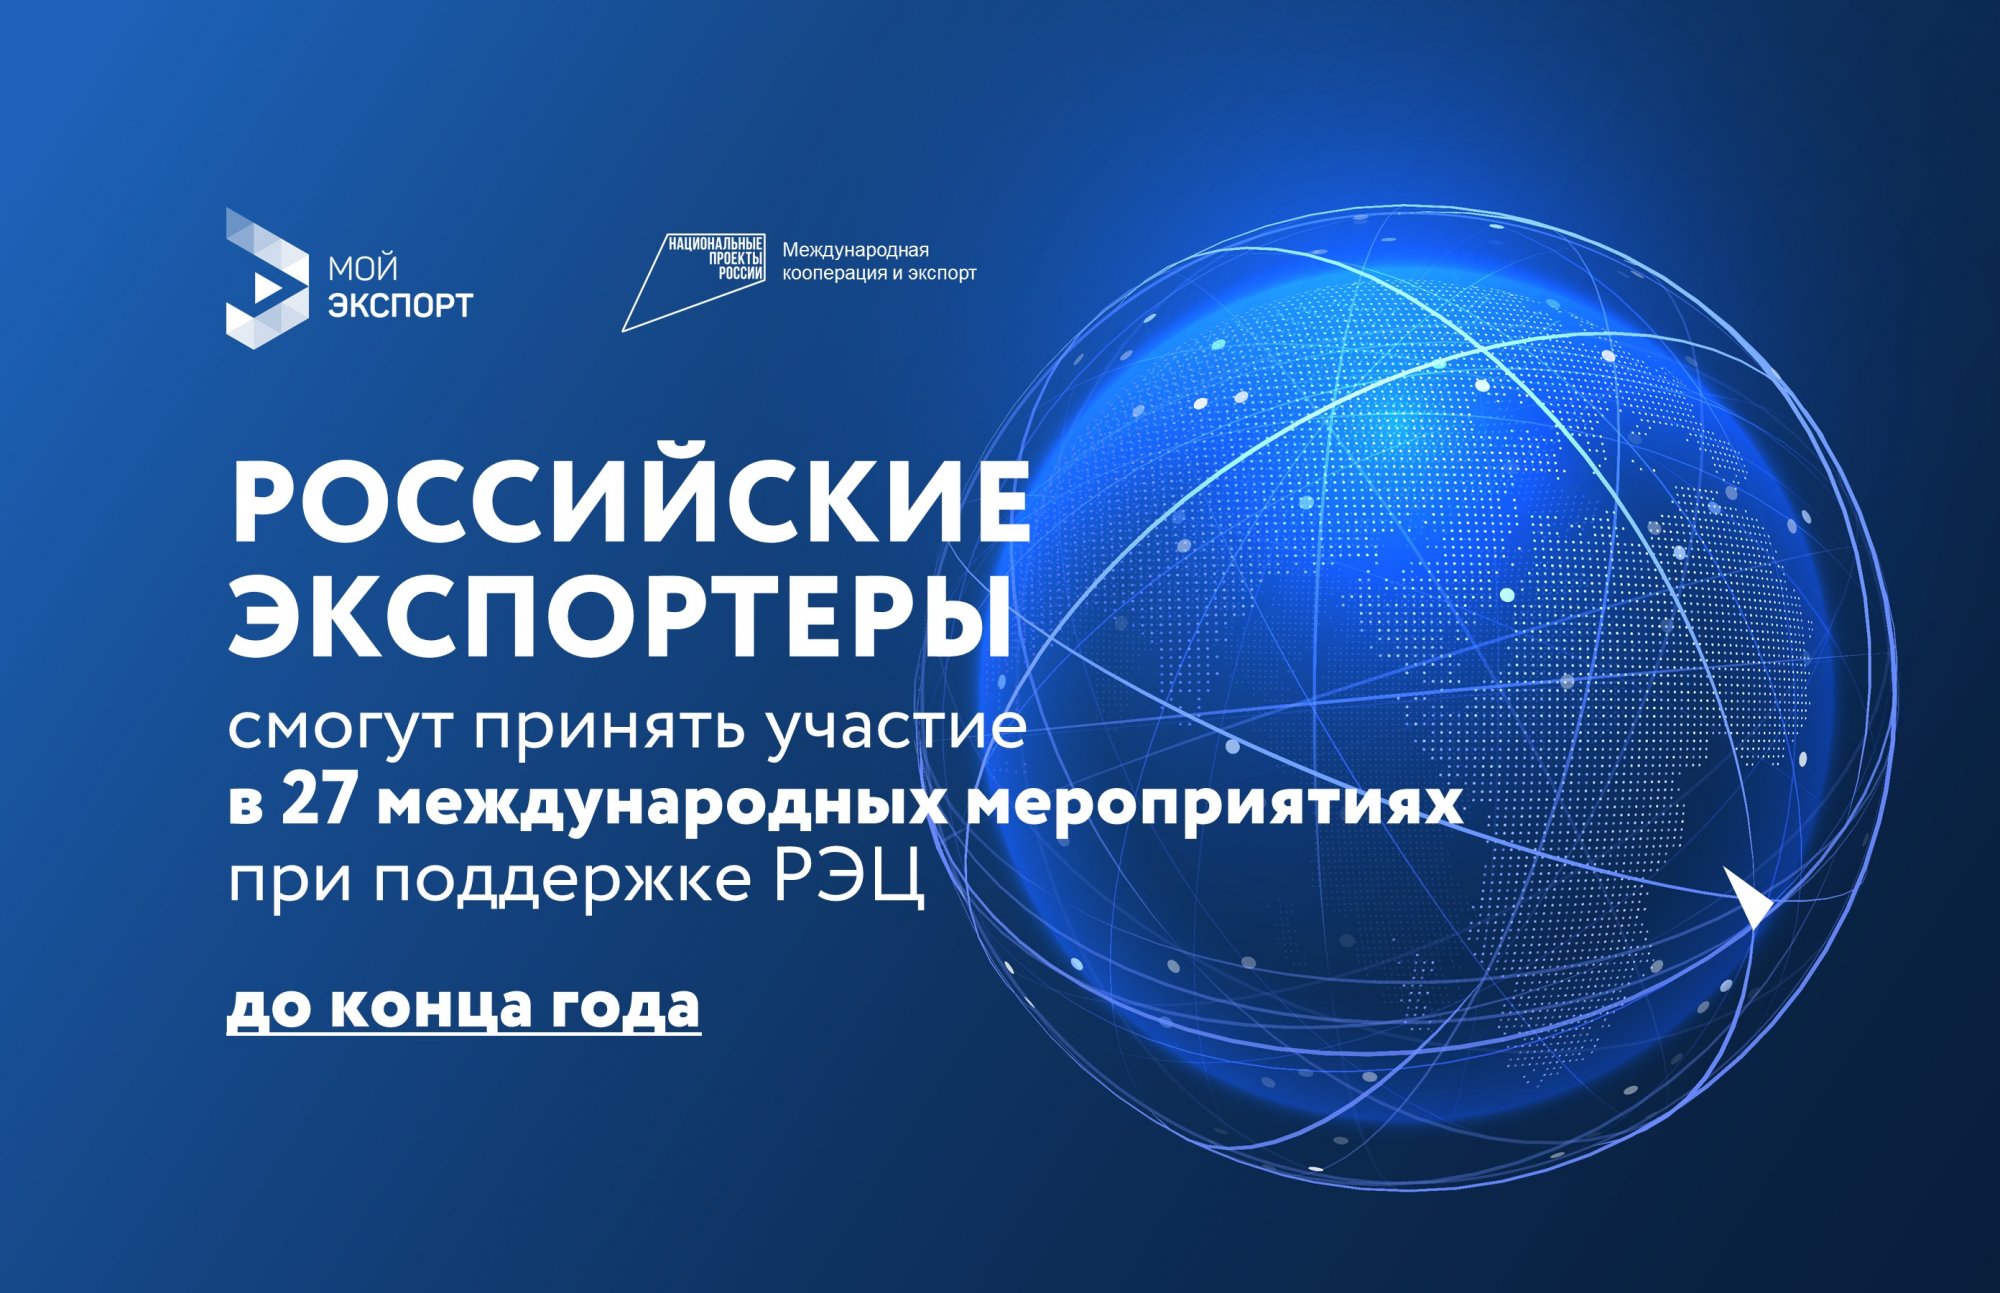 До конца года российские экспортеры смогут принять участие в 27 международных мероприятиях при поддержке РЭЦ